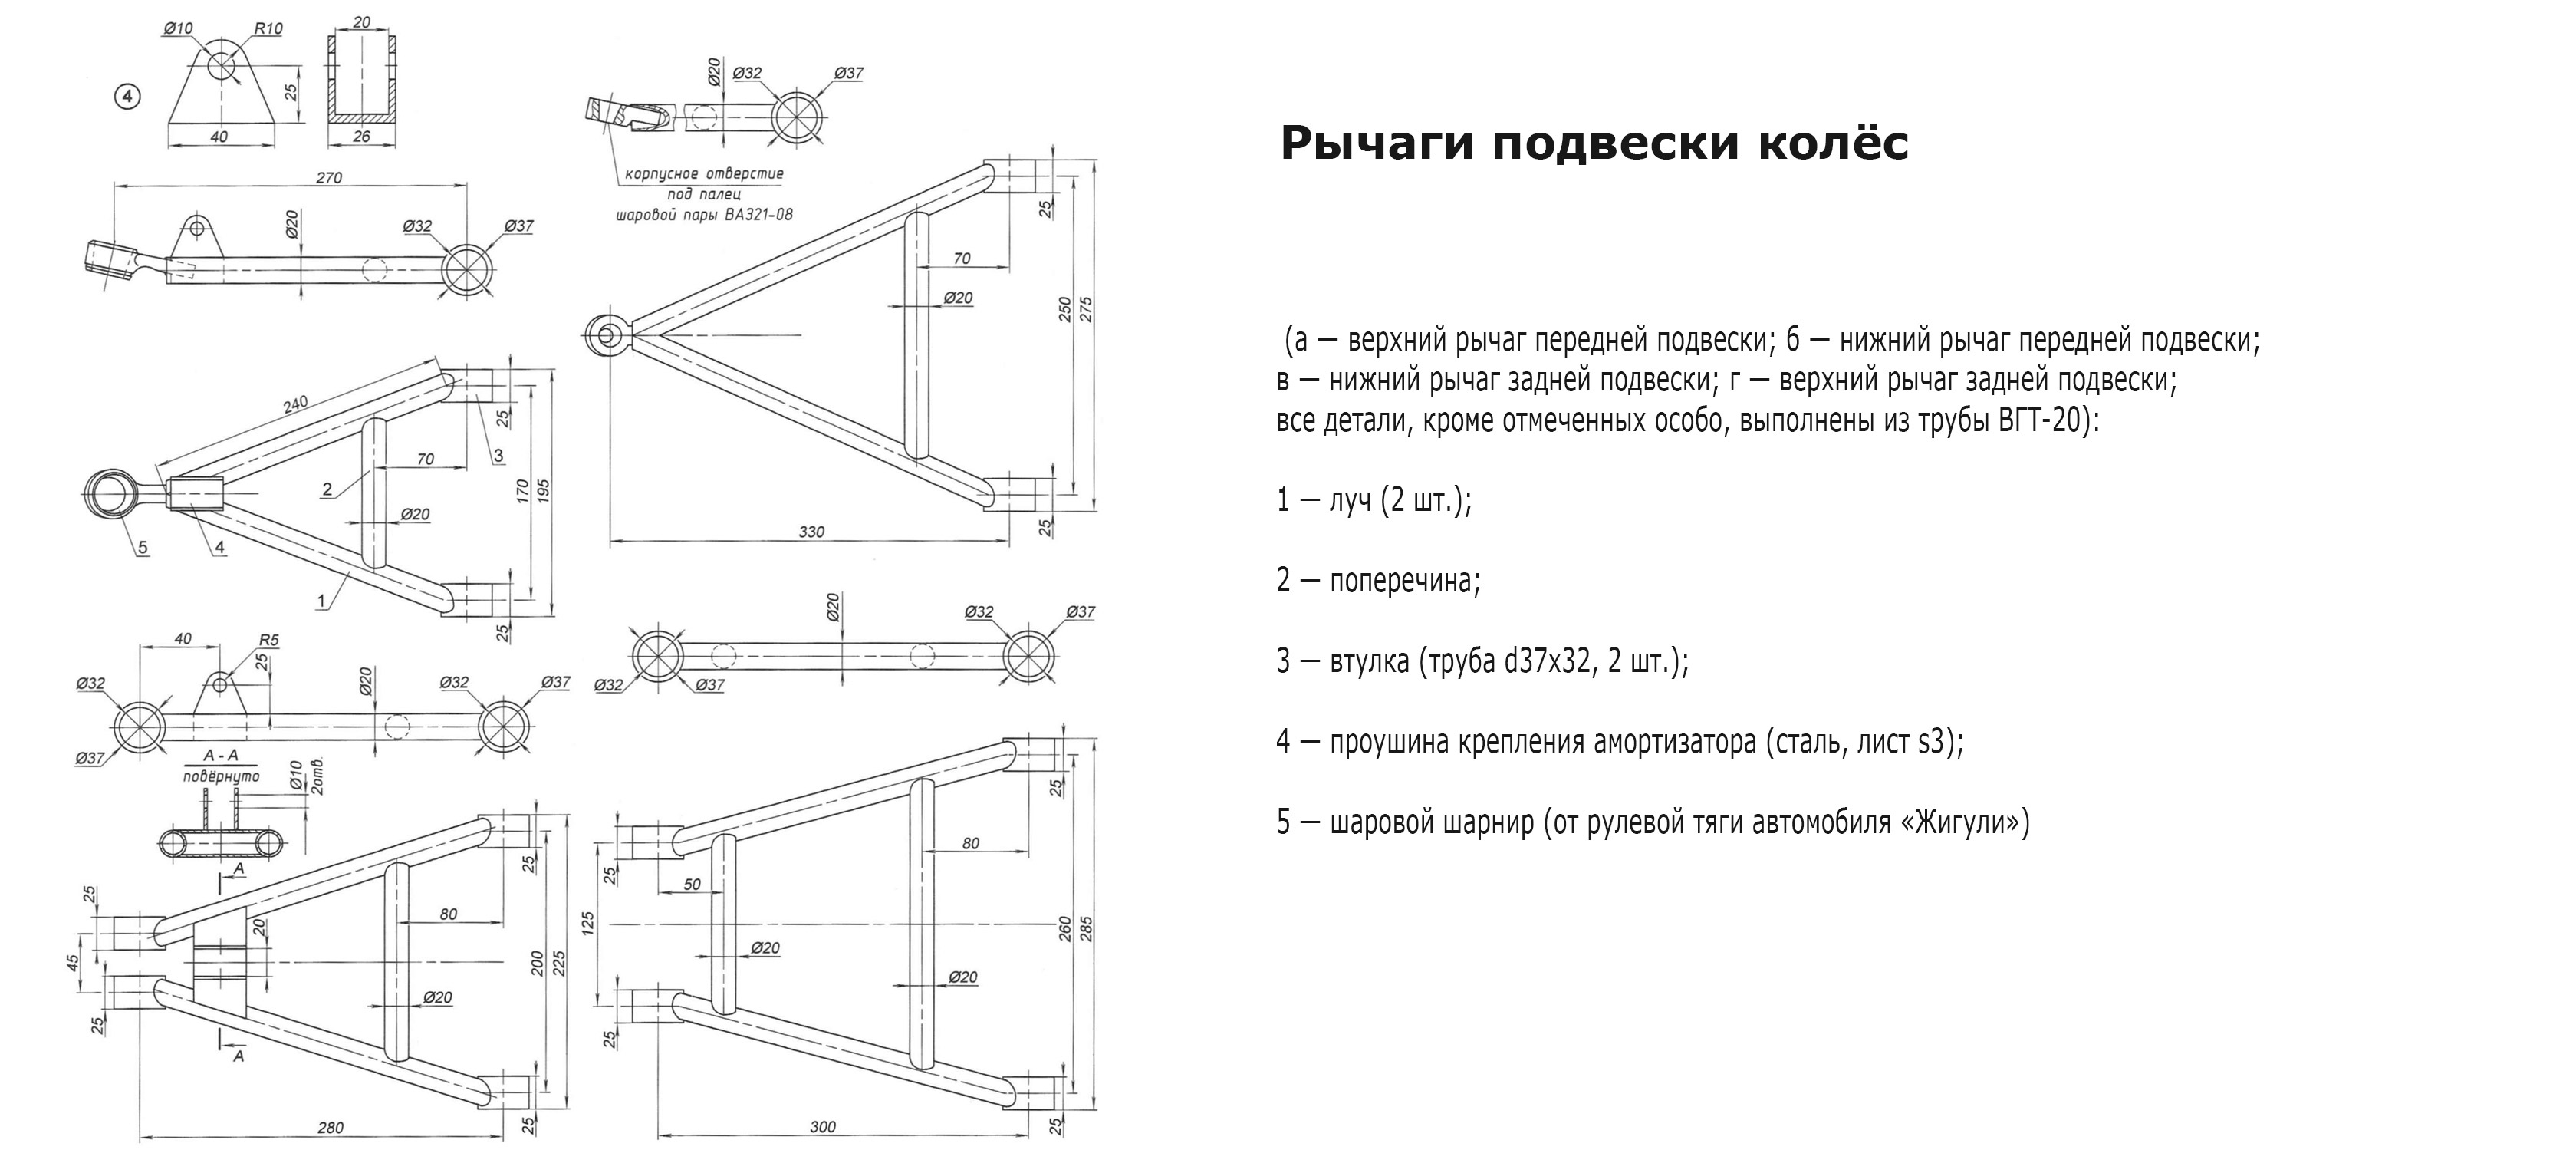 6 комплектаций самодельных квадроциклов: собираем квадрик своими руками – радиокоптер.ру